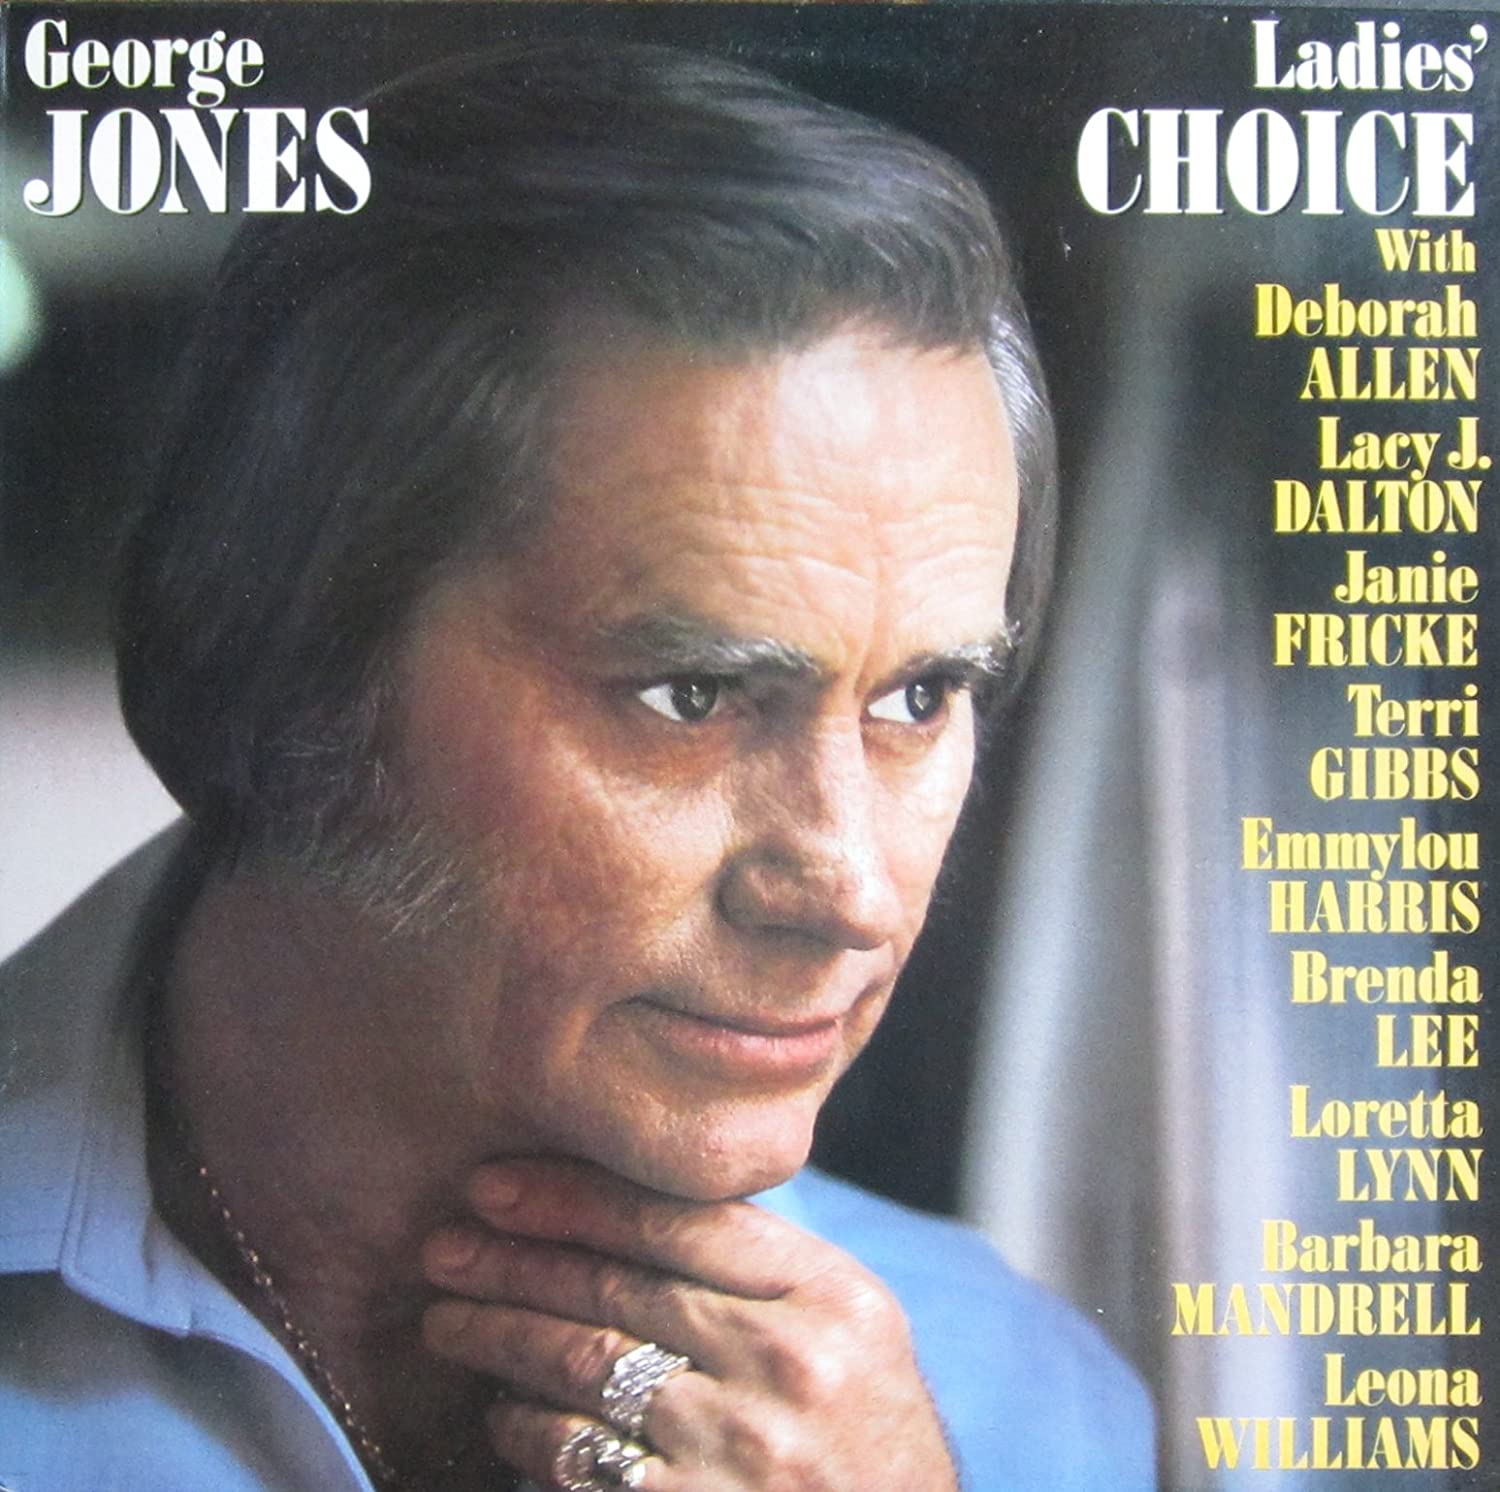 LP4521.George Jones And Lacy Dalton - Size Seven Round (Vinyl, 7", Single, 45 RPM)